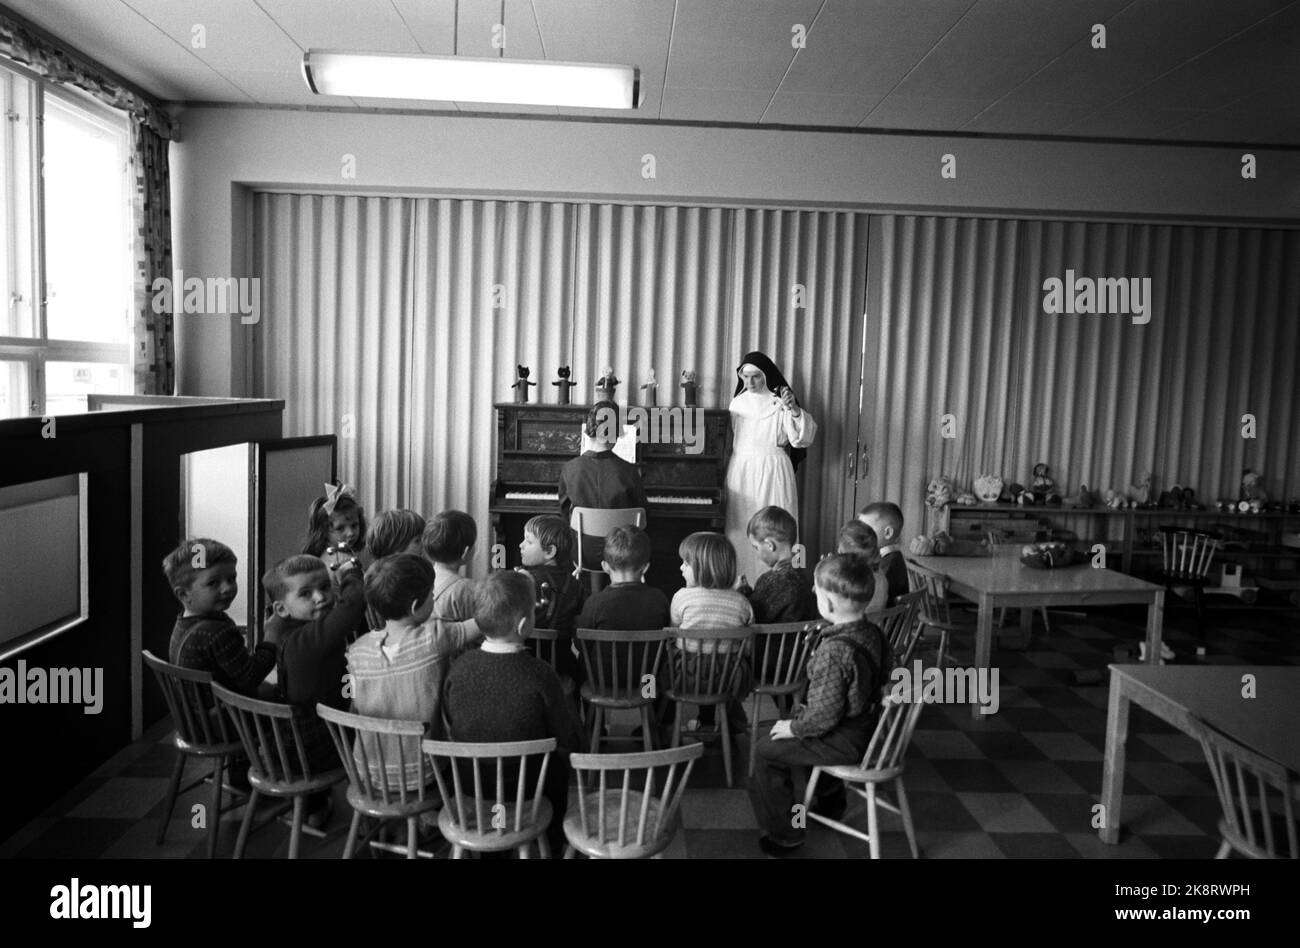 Bodø 1965 le monache cattoliche di St. Sunniva Hemm a Bodø gestiscono asilo, istruzione di judo, teatro amatoriale, balletto e danza pop. I bambini dell'asilo hanno un tempo di ritrovo. Suor Prisca, Svizzera, ha frequentato la Child Welfare Academy di Oslo. 50 figli sono fidati di lei e delle altre sorelle. Foto: Ivar Aaserud / corrente / NTB Foto Stock